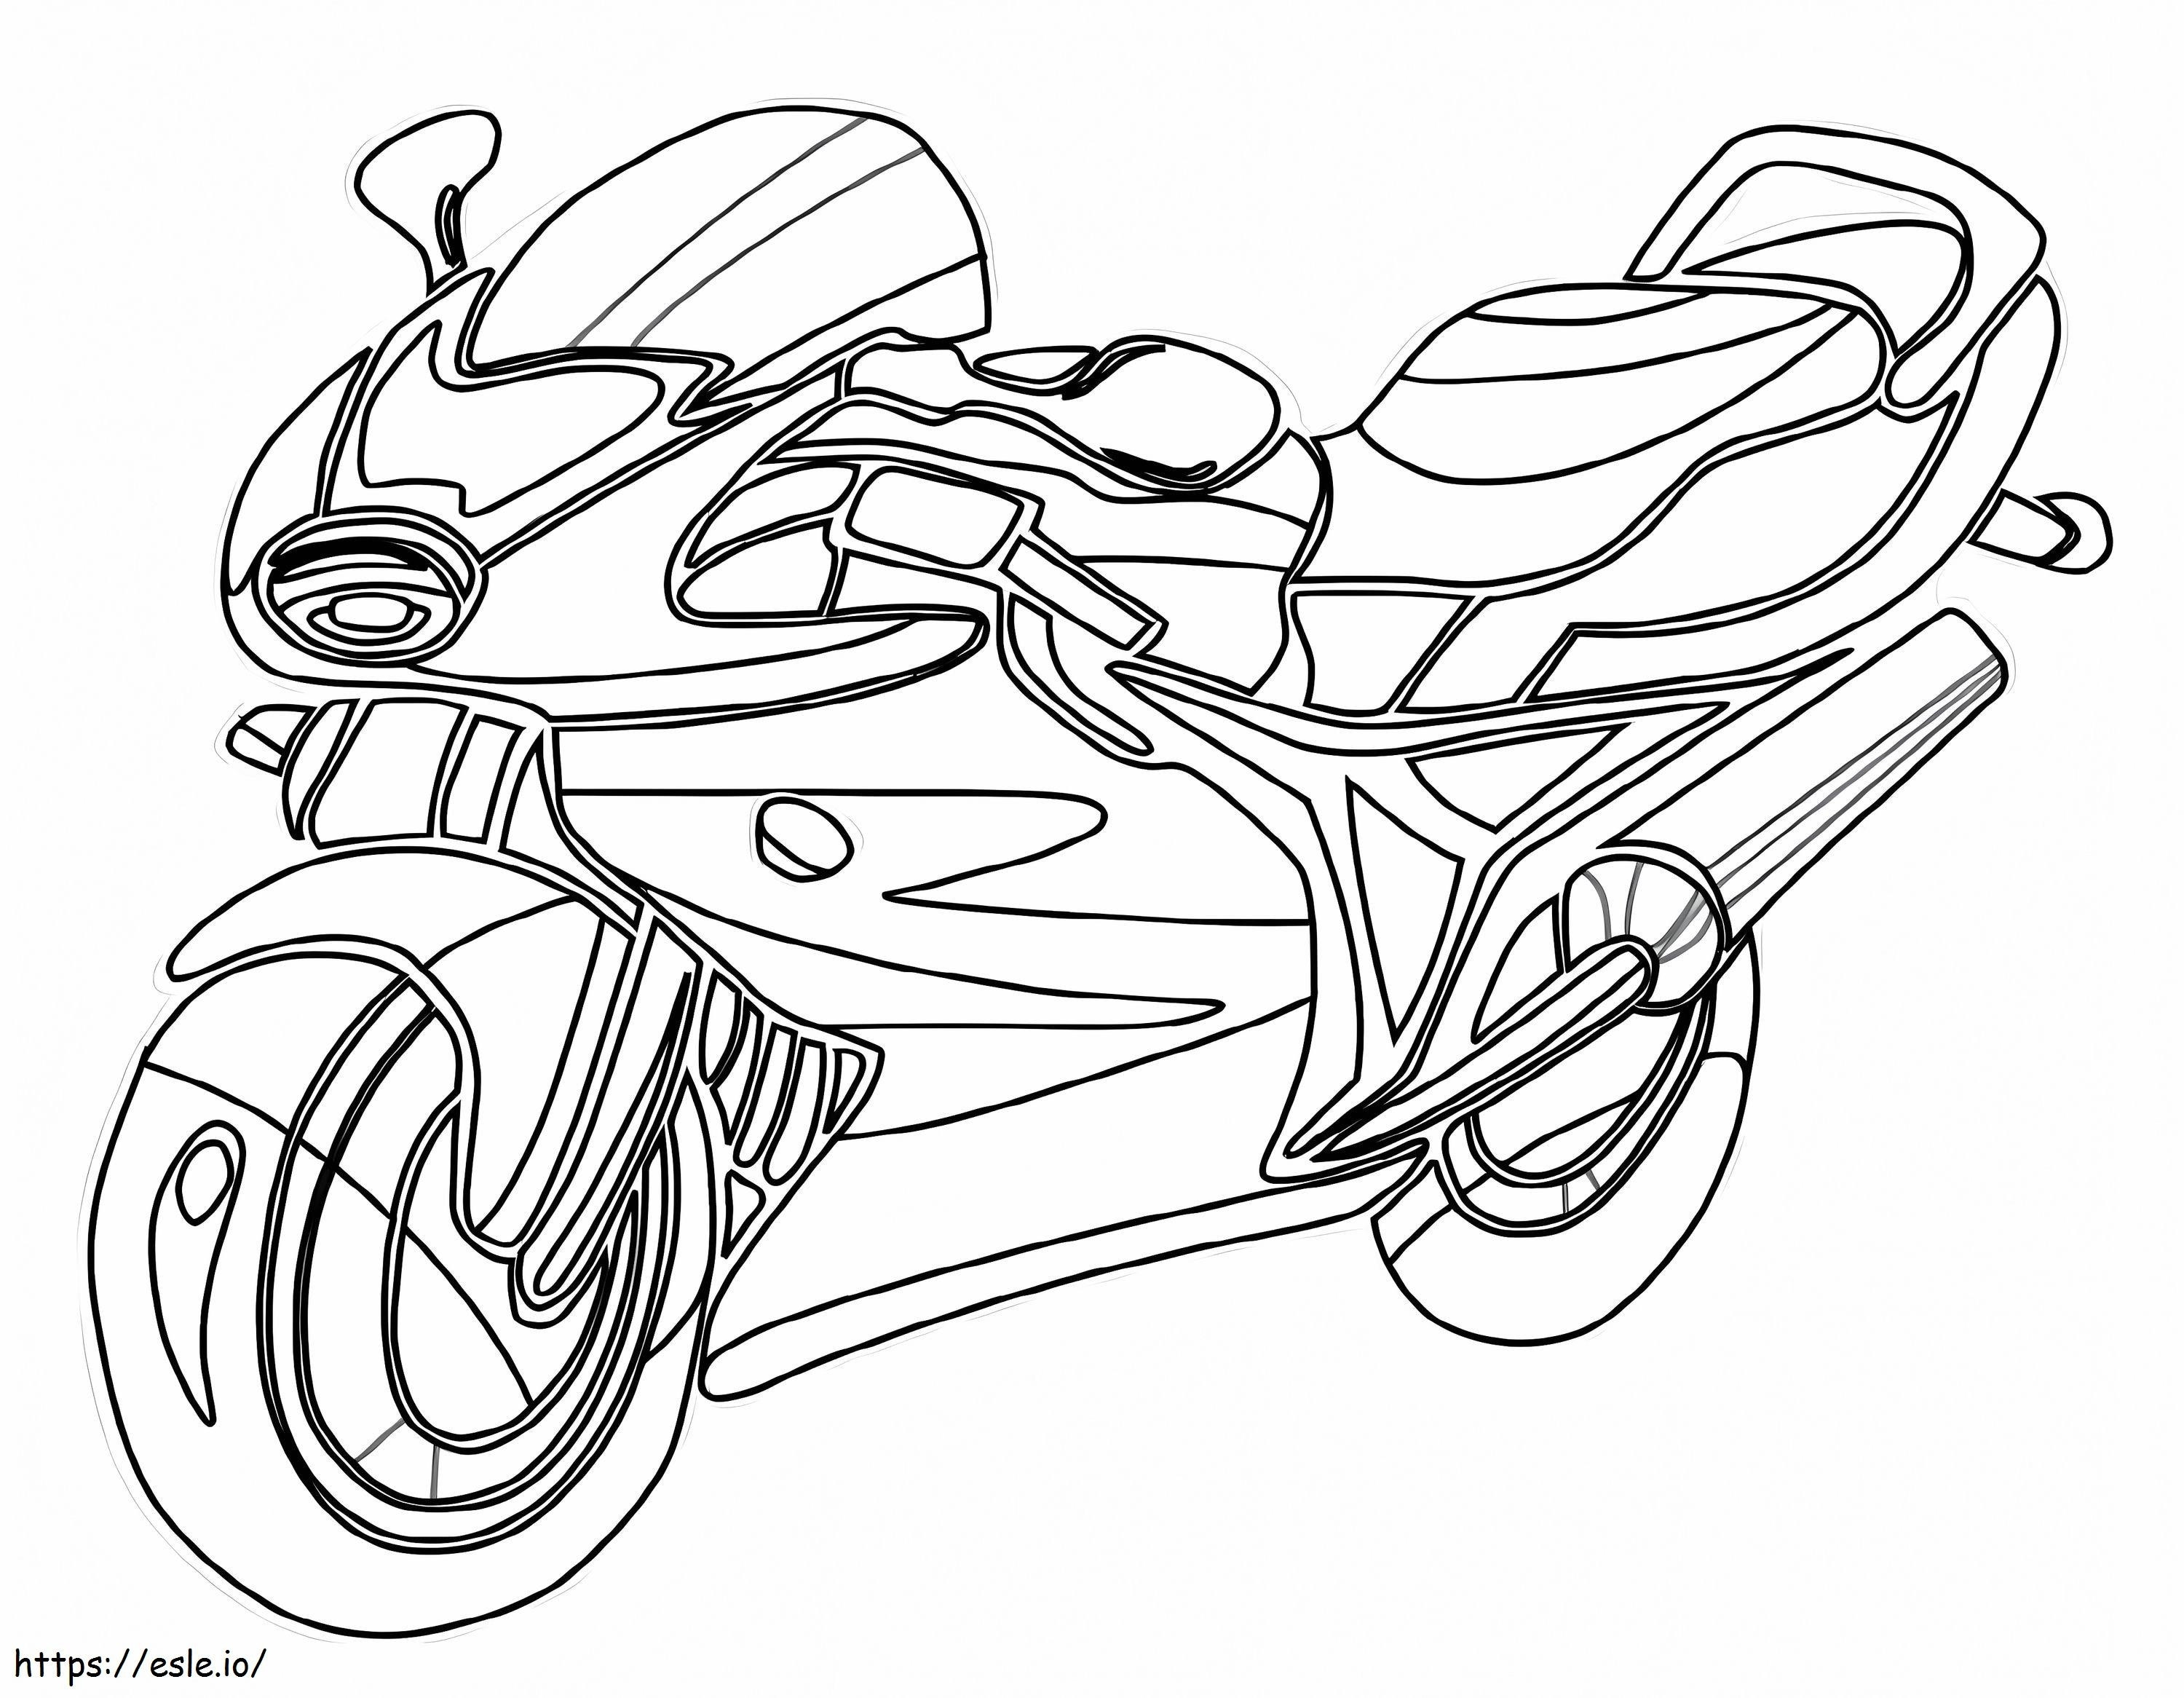 Motorrad 1 ausmalbilder